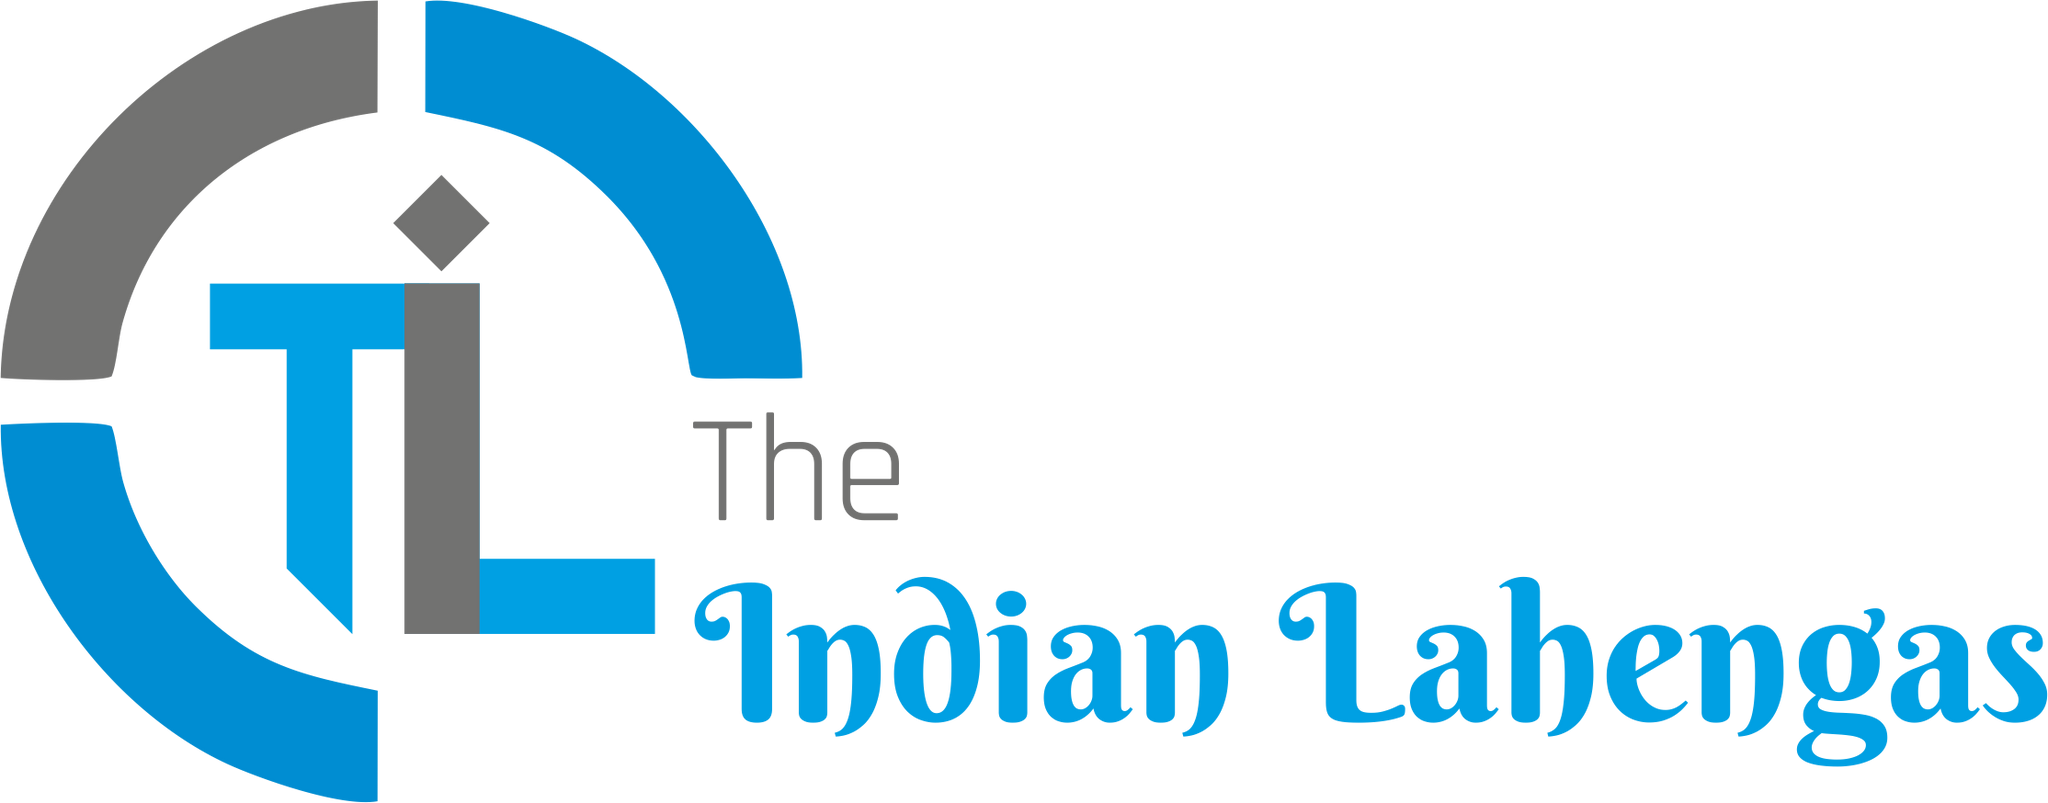 The Indian Lehenga